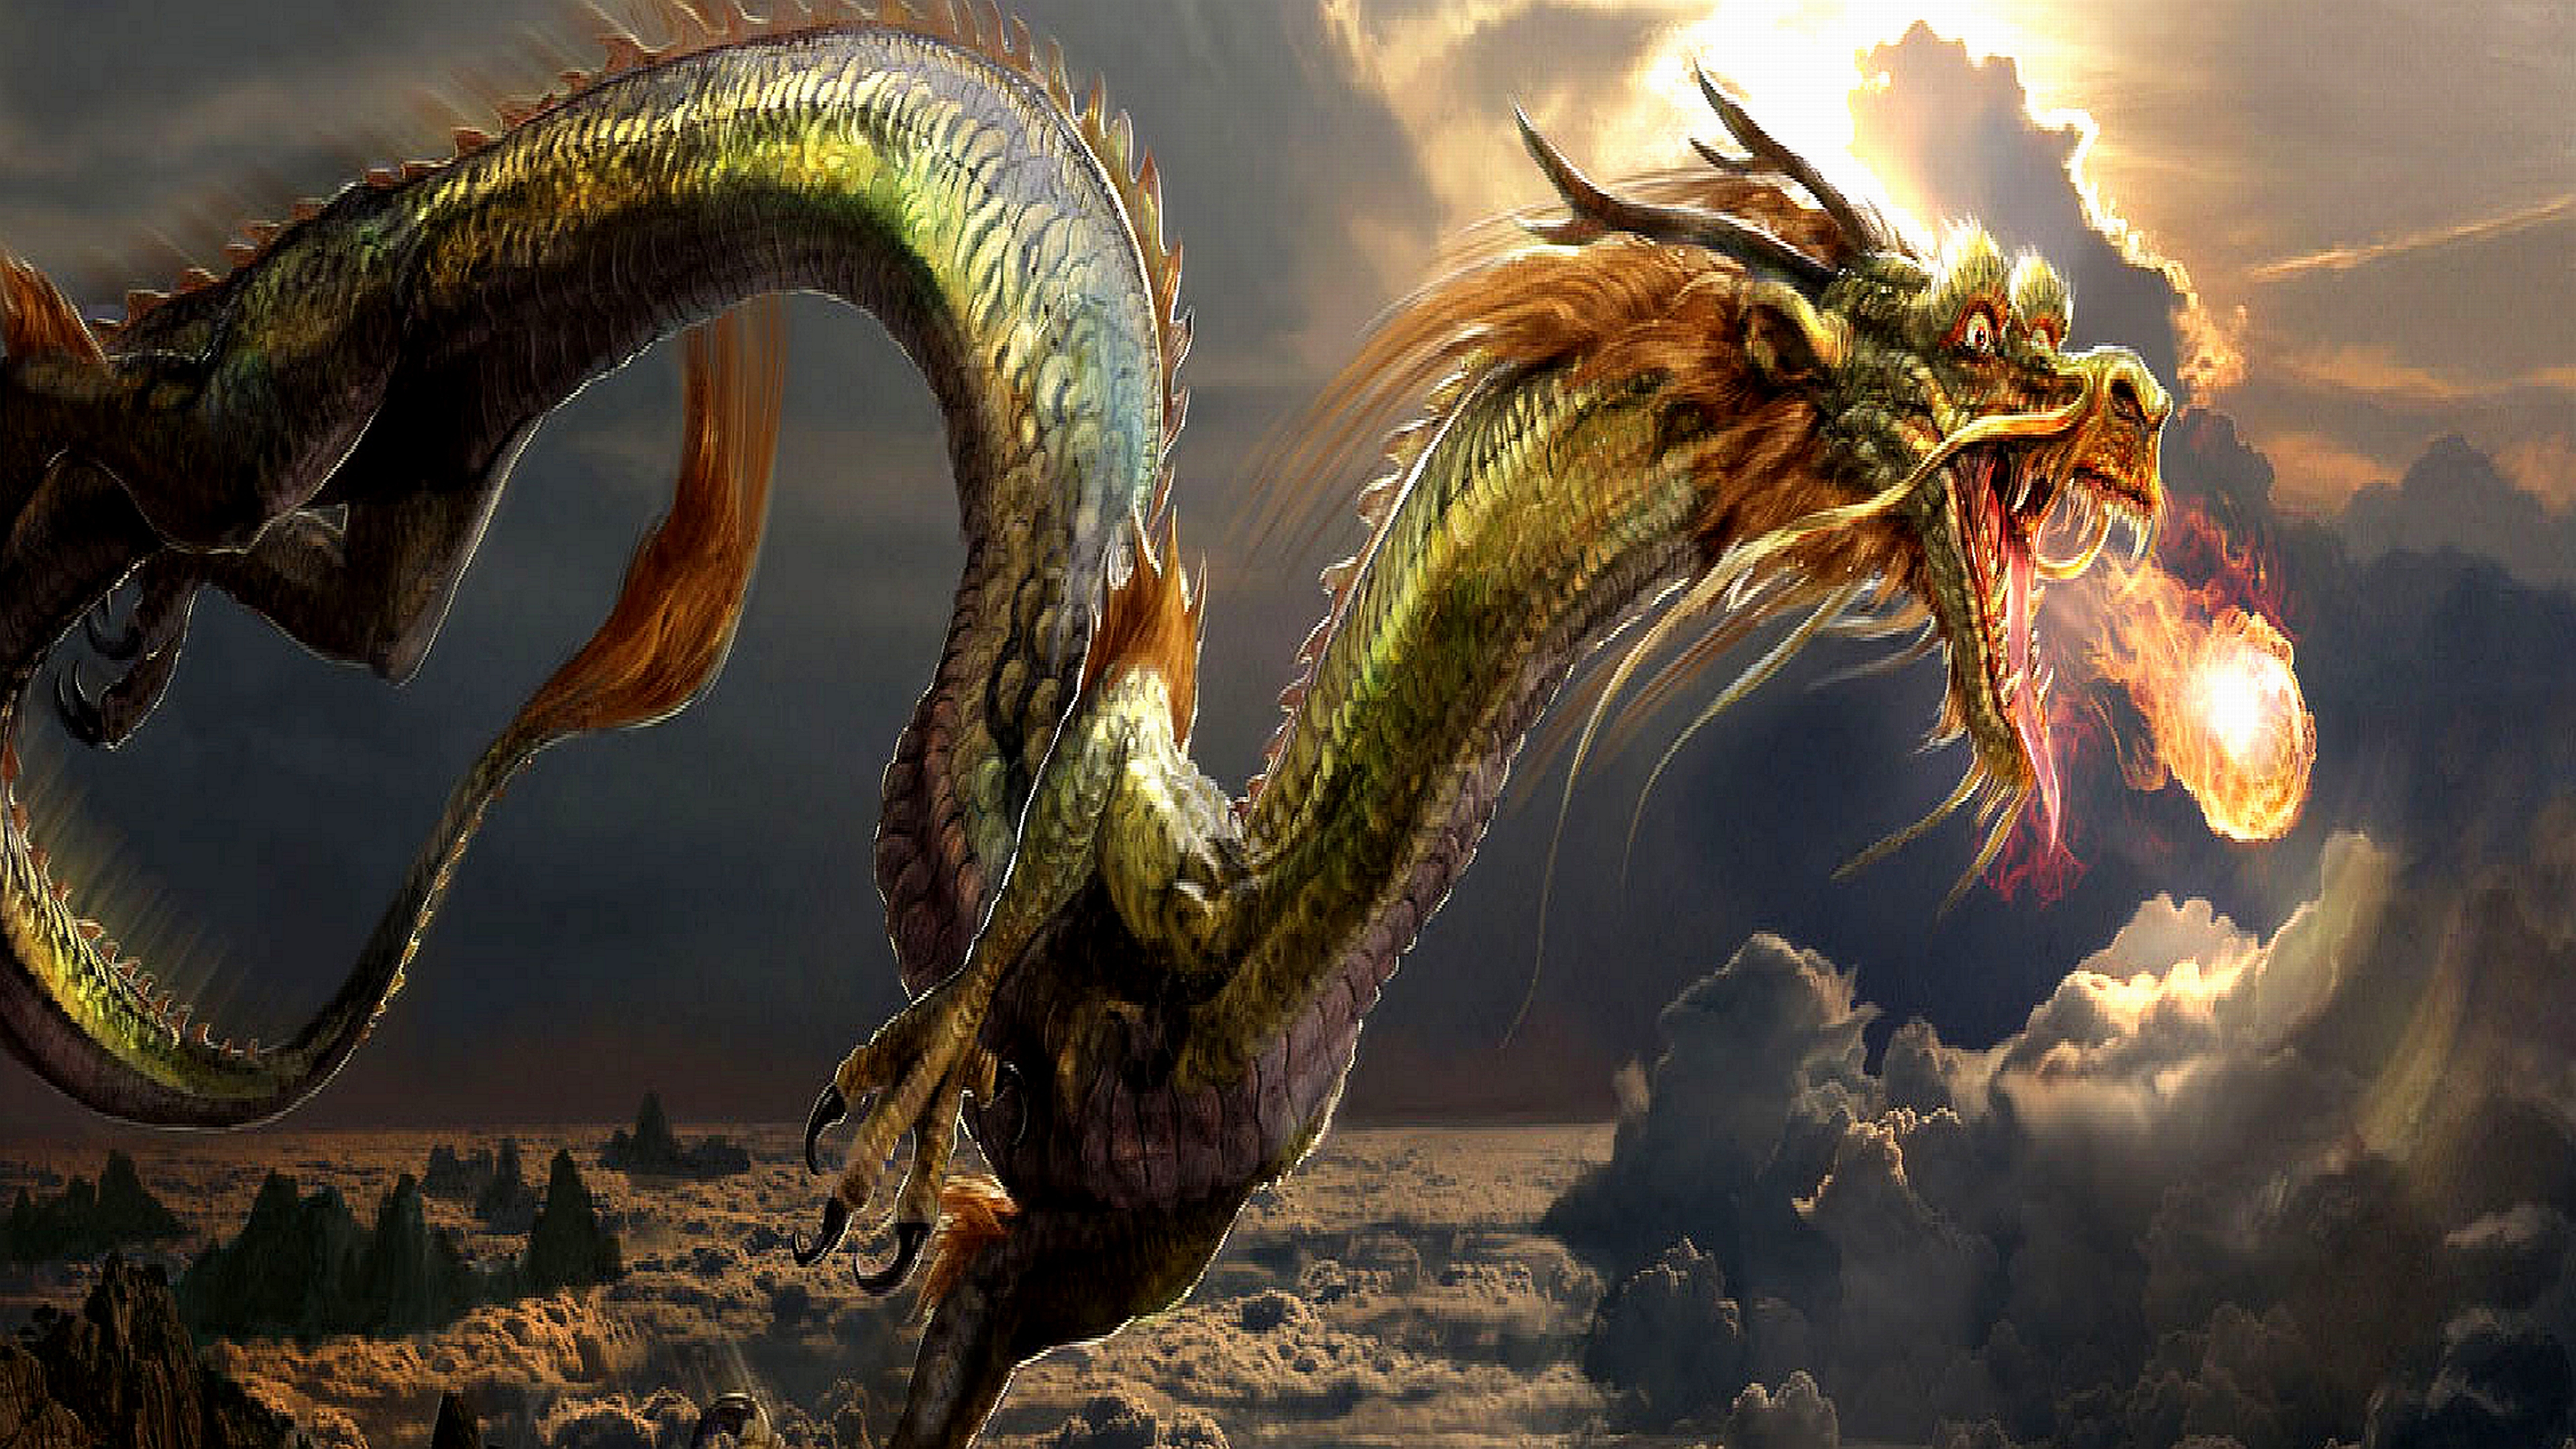 4k dragon wallpaper,continuar,cg artwork,mitología,personaje de ficción,criatura mítica